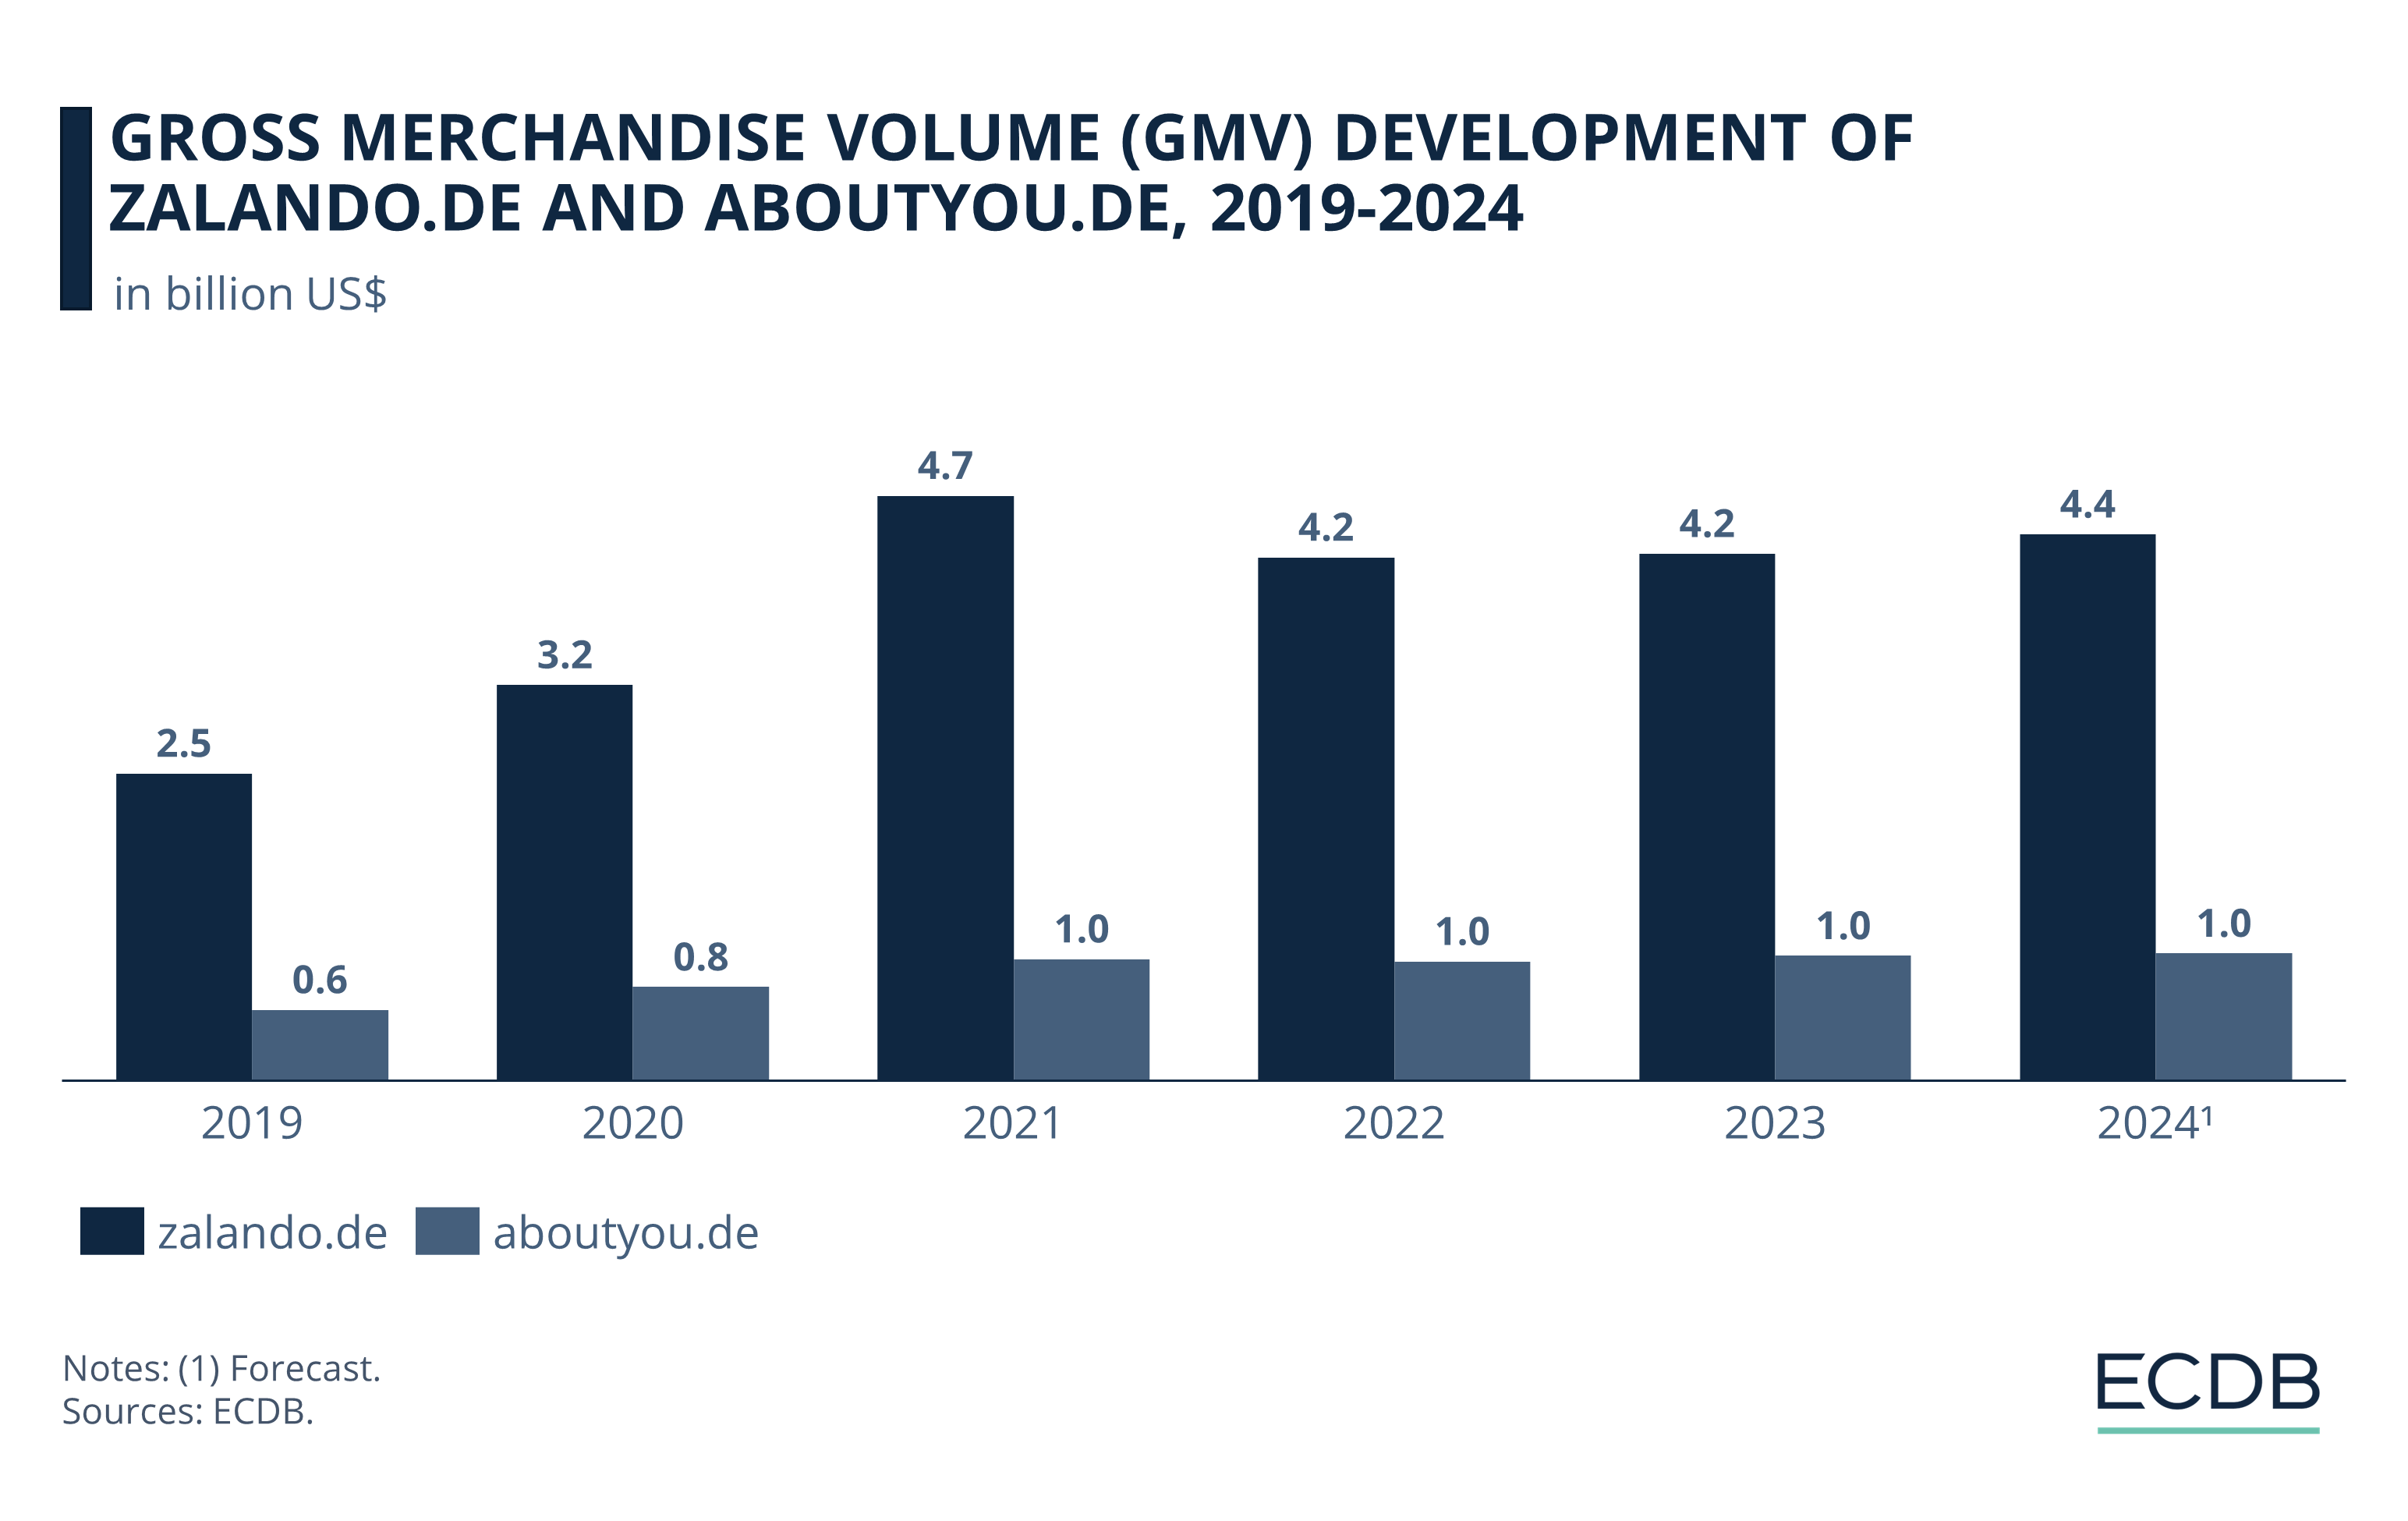 GMV Development of Zalando.de and Aboutyou.de, 2019-2024